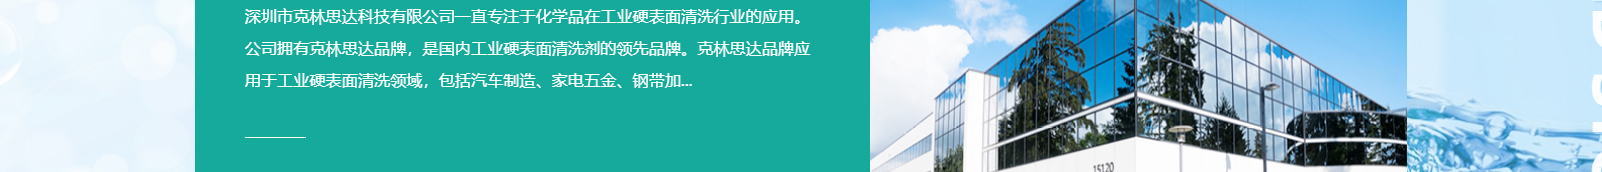 深圳市克林思达科技有限公司_响应式网站建设制作案例